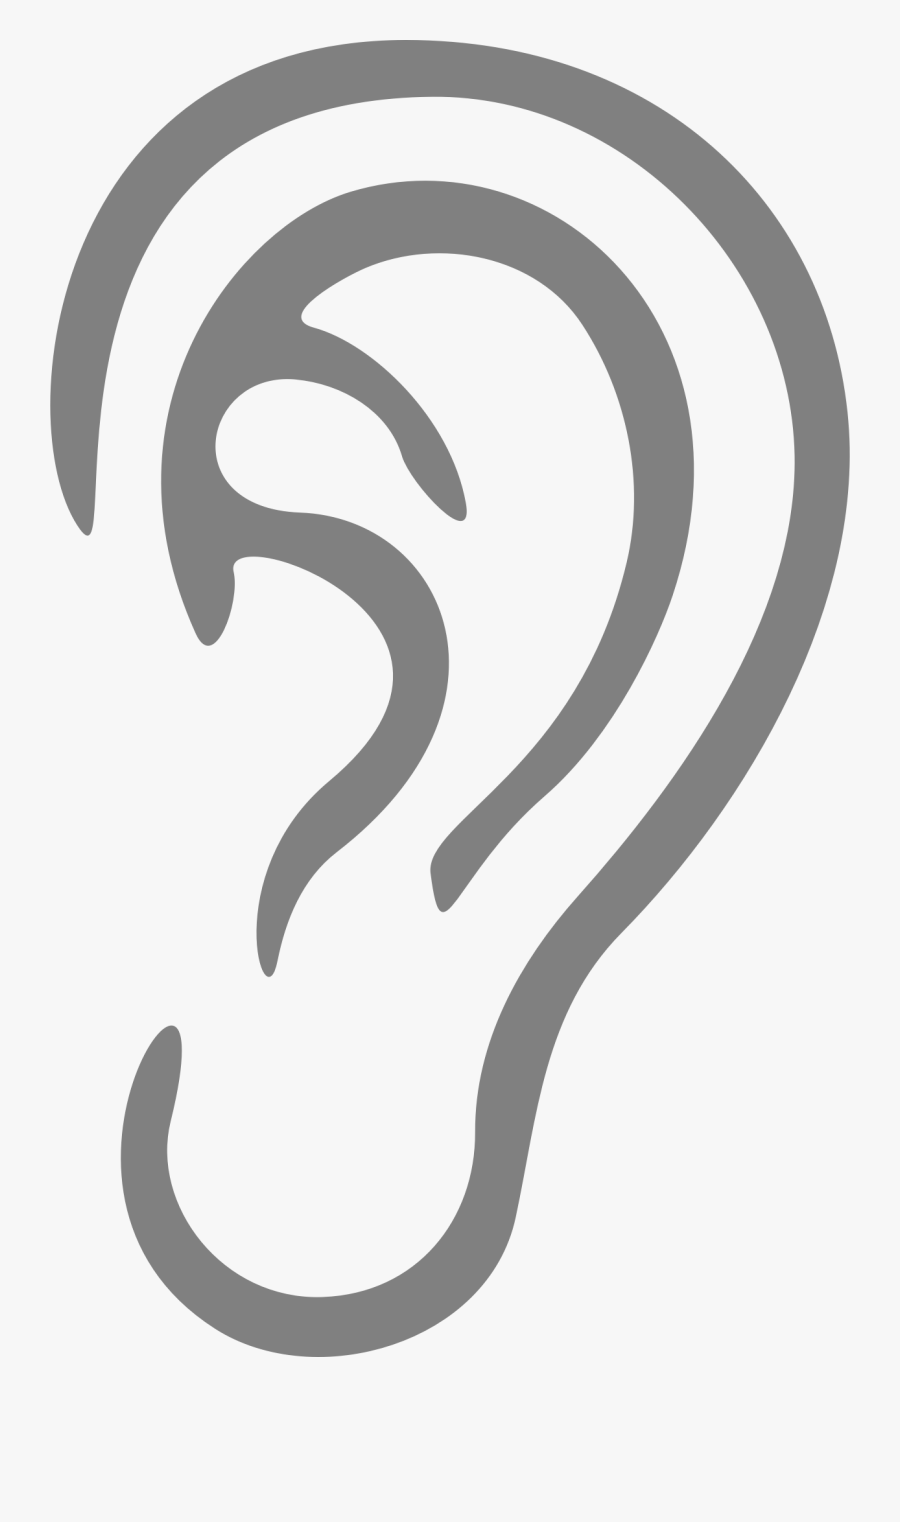 Ear Clipart Simple - Transparent Png Ear Clipart, Transparent Clipart